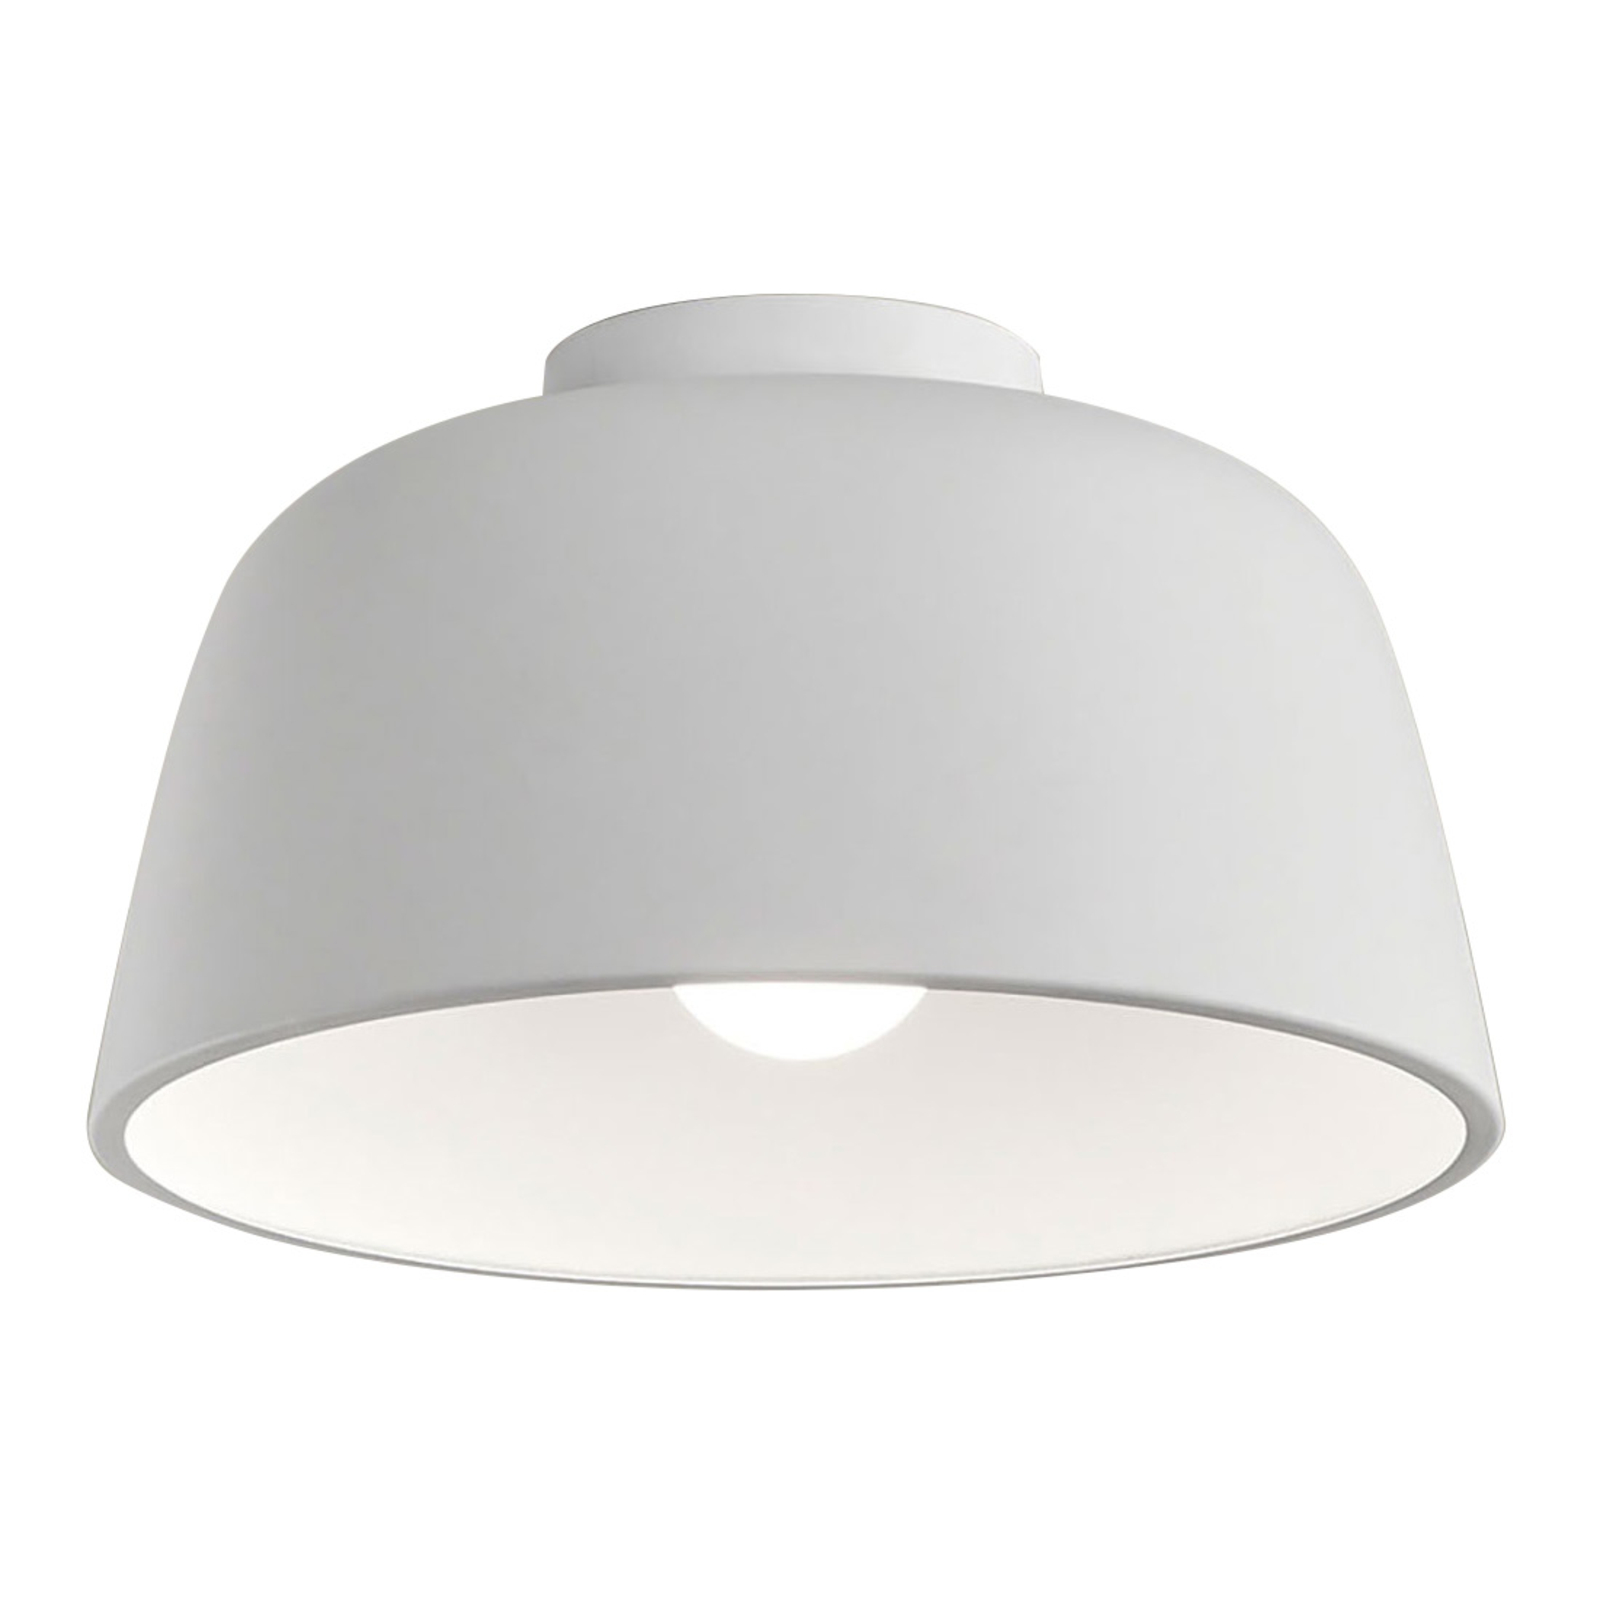 LEDS-C4 Miso ceiling light Ø 43.3 cm white